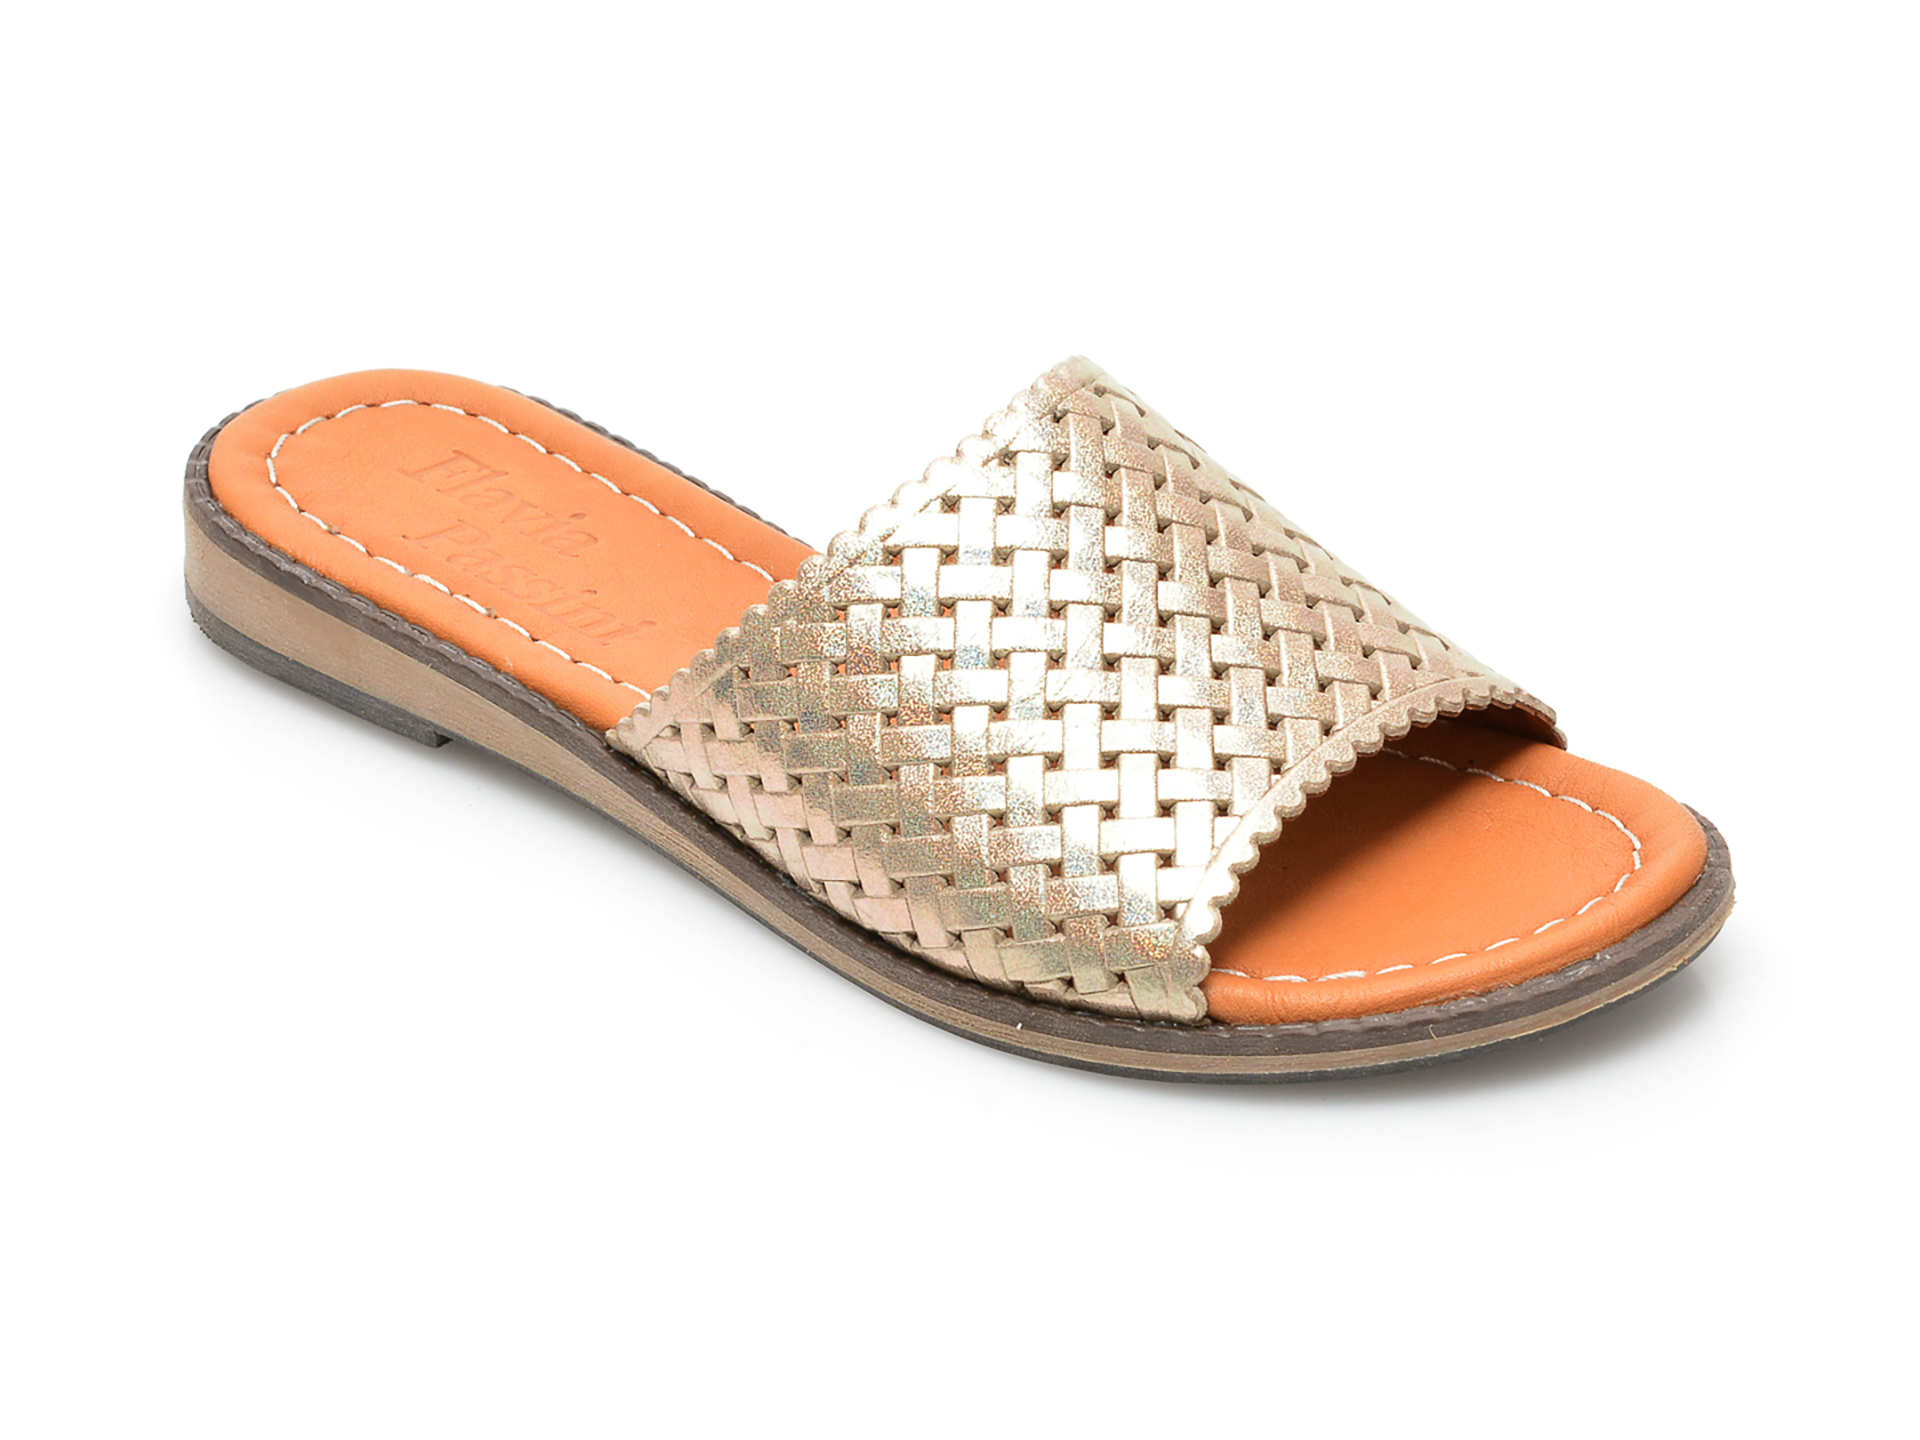 Papuci FLAVIA PASSINI aurii, 22201, din piele naturala